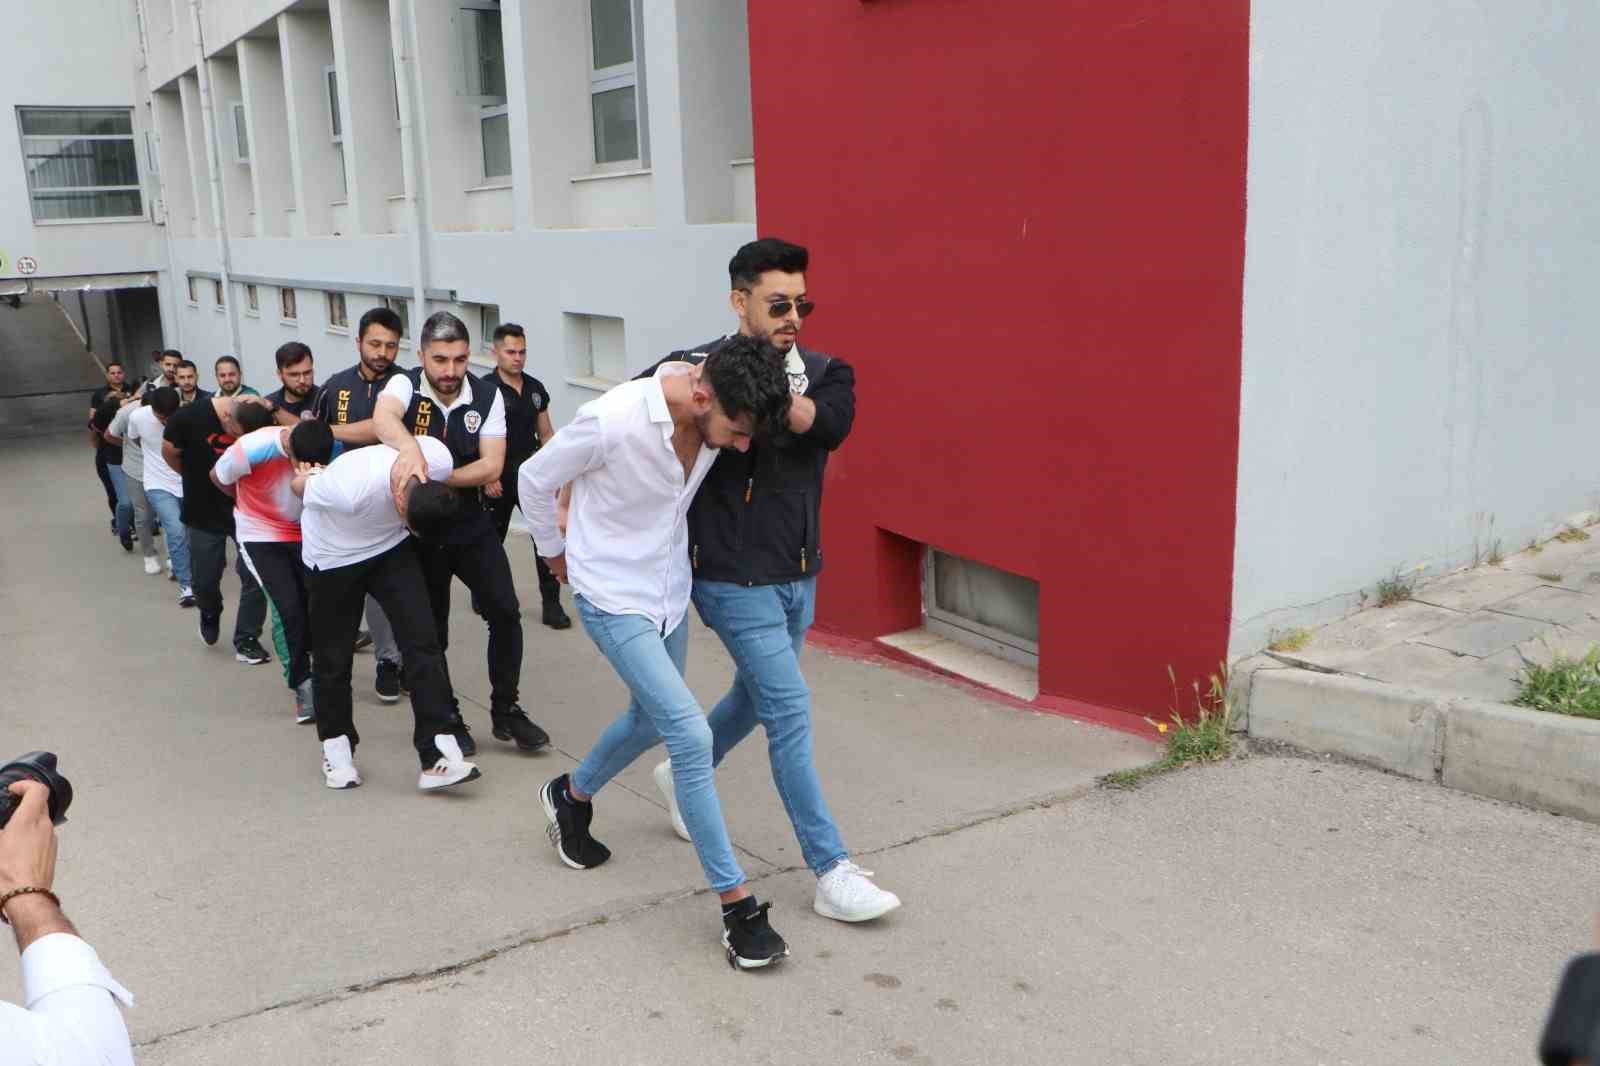 Adana'da “Sazan sarmalı” yöntemiyle 1 milyon liralık vurgun: 7 tutuklama